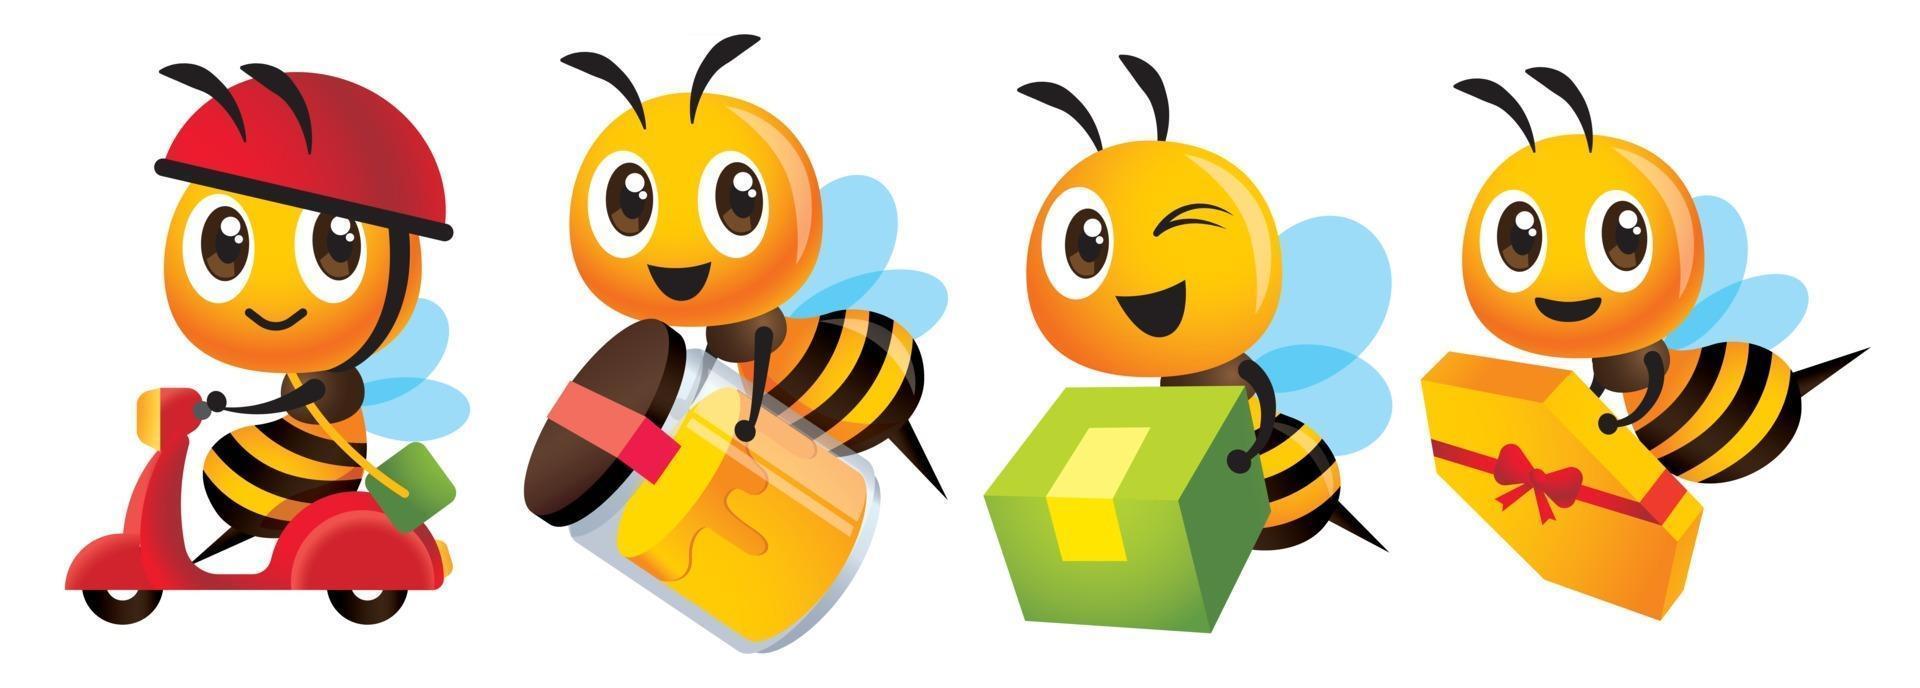 tecknad söt bi levererar produkter med scooter eller bär ekologisk honungsflaska eller presentförpackning vektor